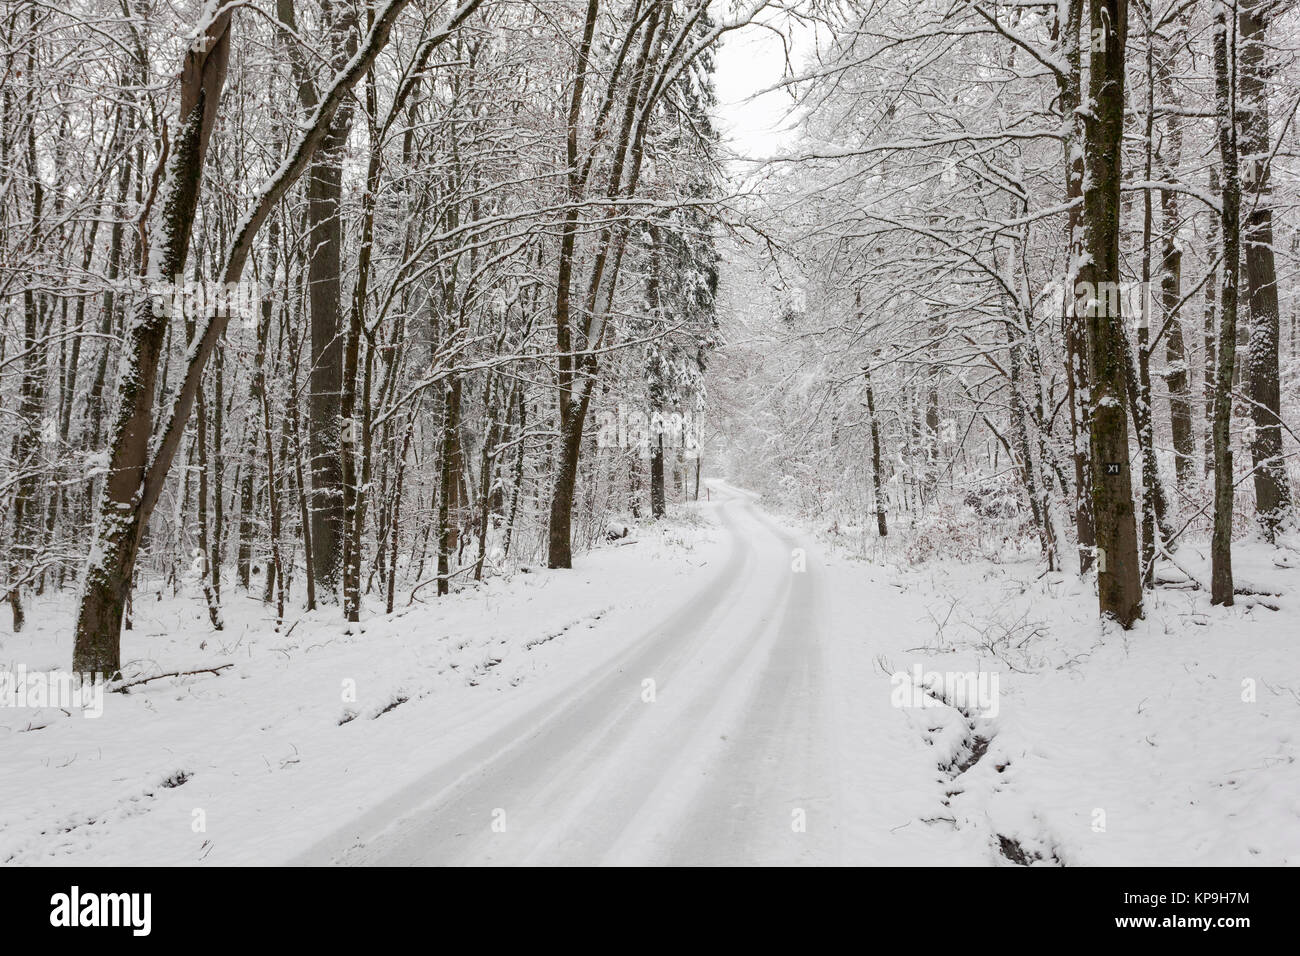 Dans un chemin couvert de neige Snowy White winter forest Banque D'Images